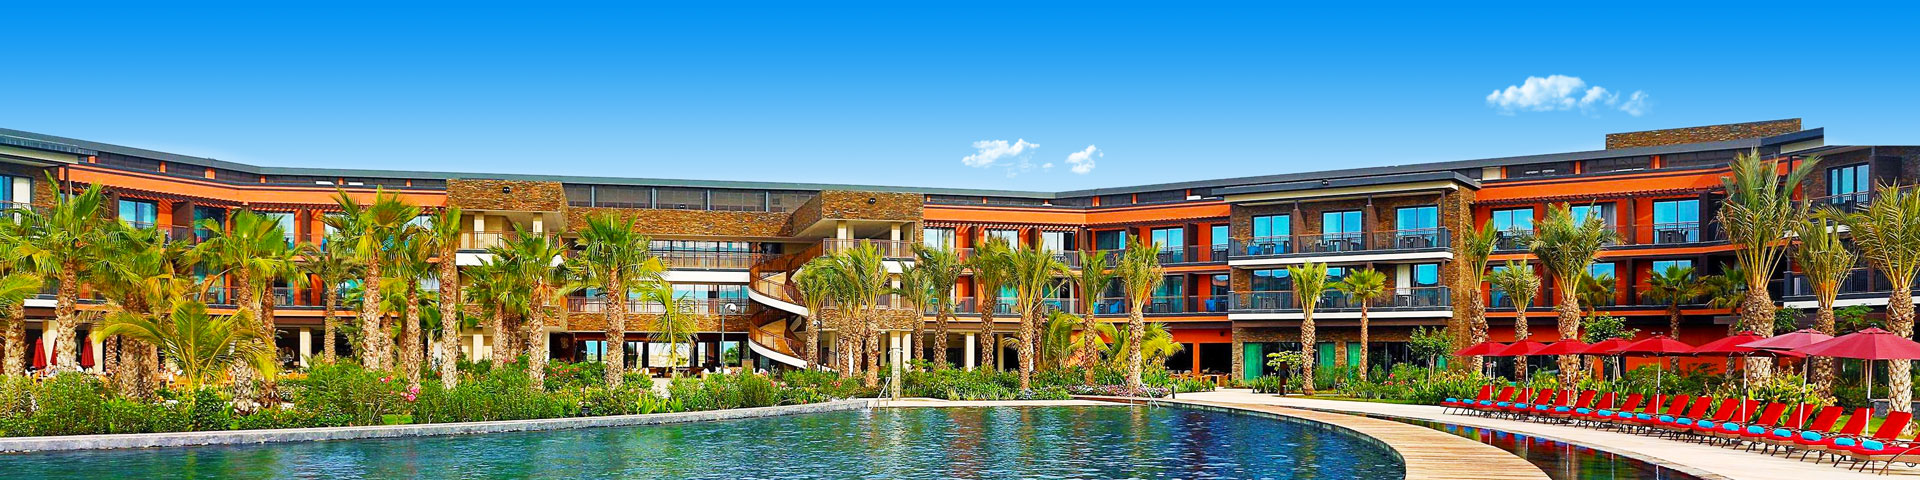 Hotel met ruim zwembad en zonneterras van de Hilton keten